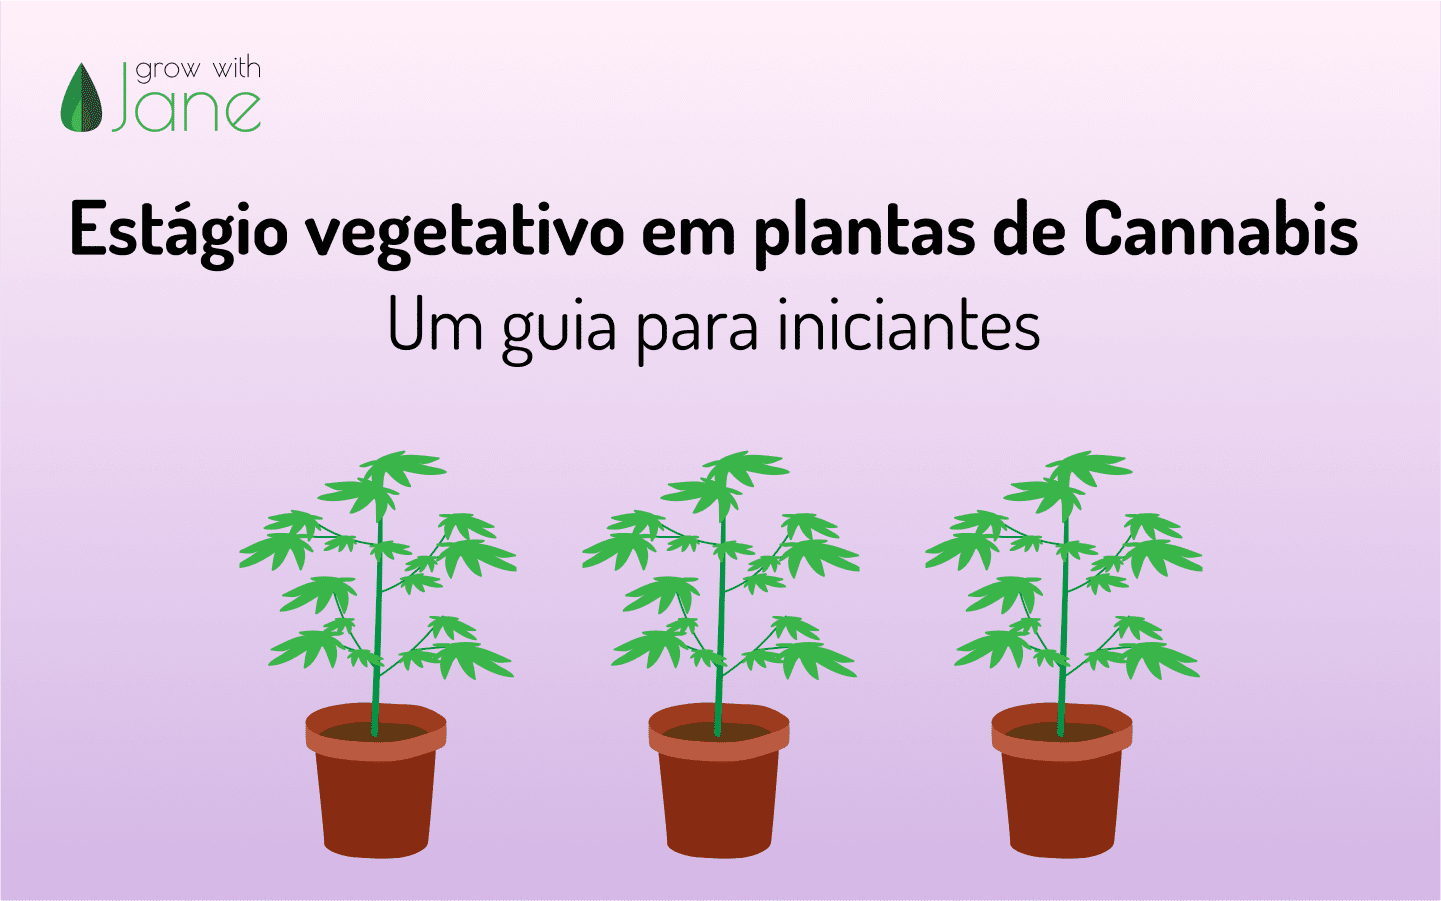 Estágio vegetativo em plantas de Cannabis: um guia para iniciantes